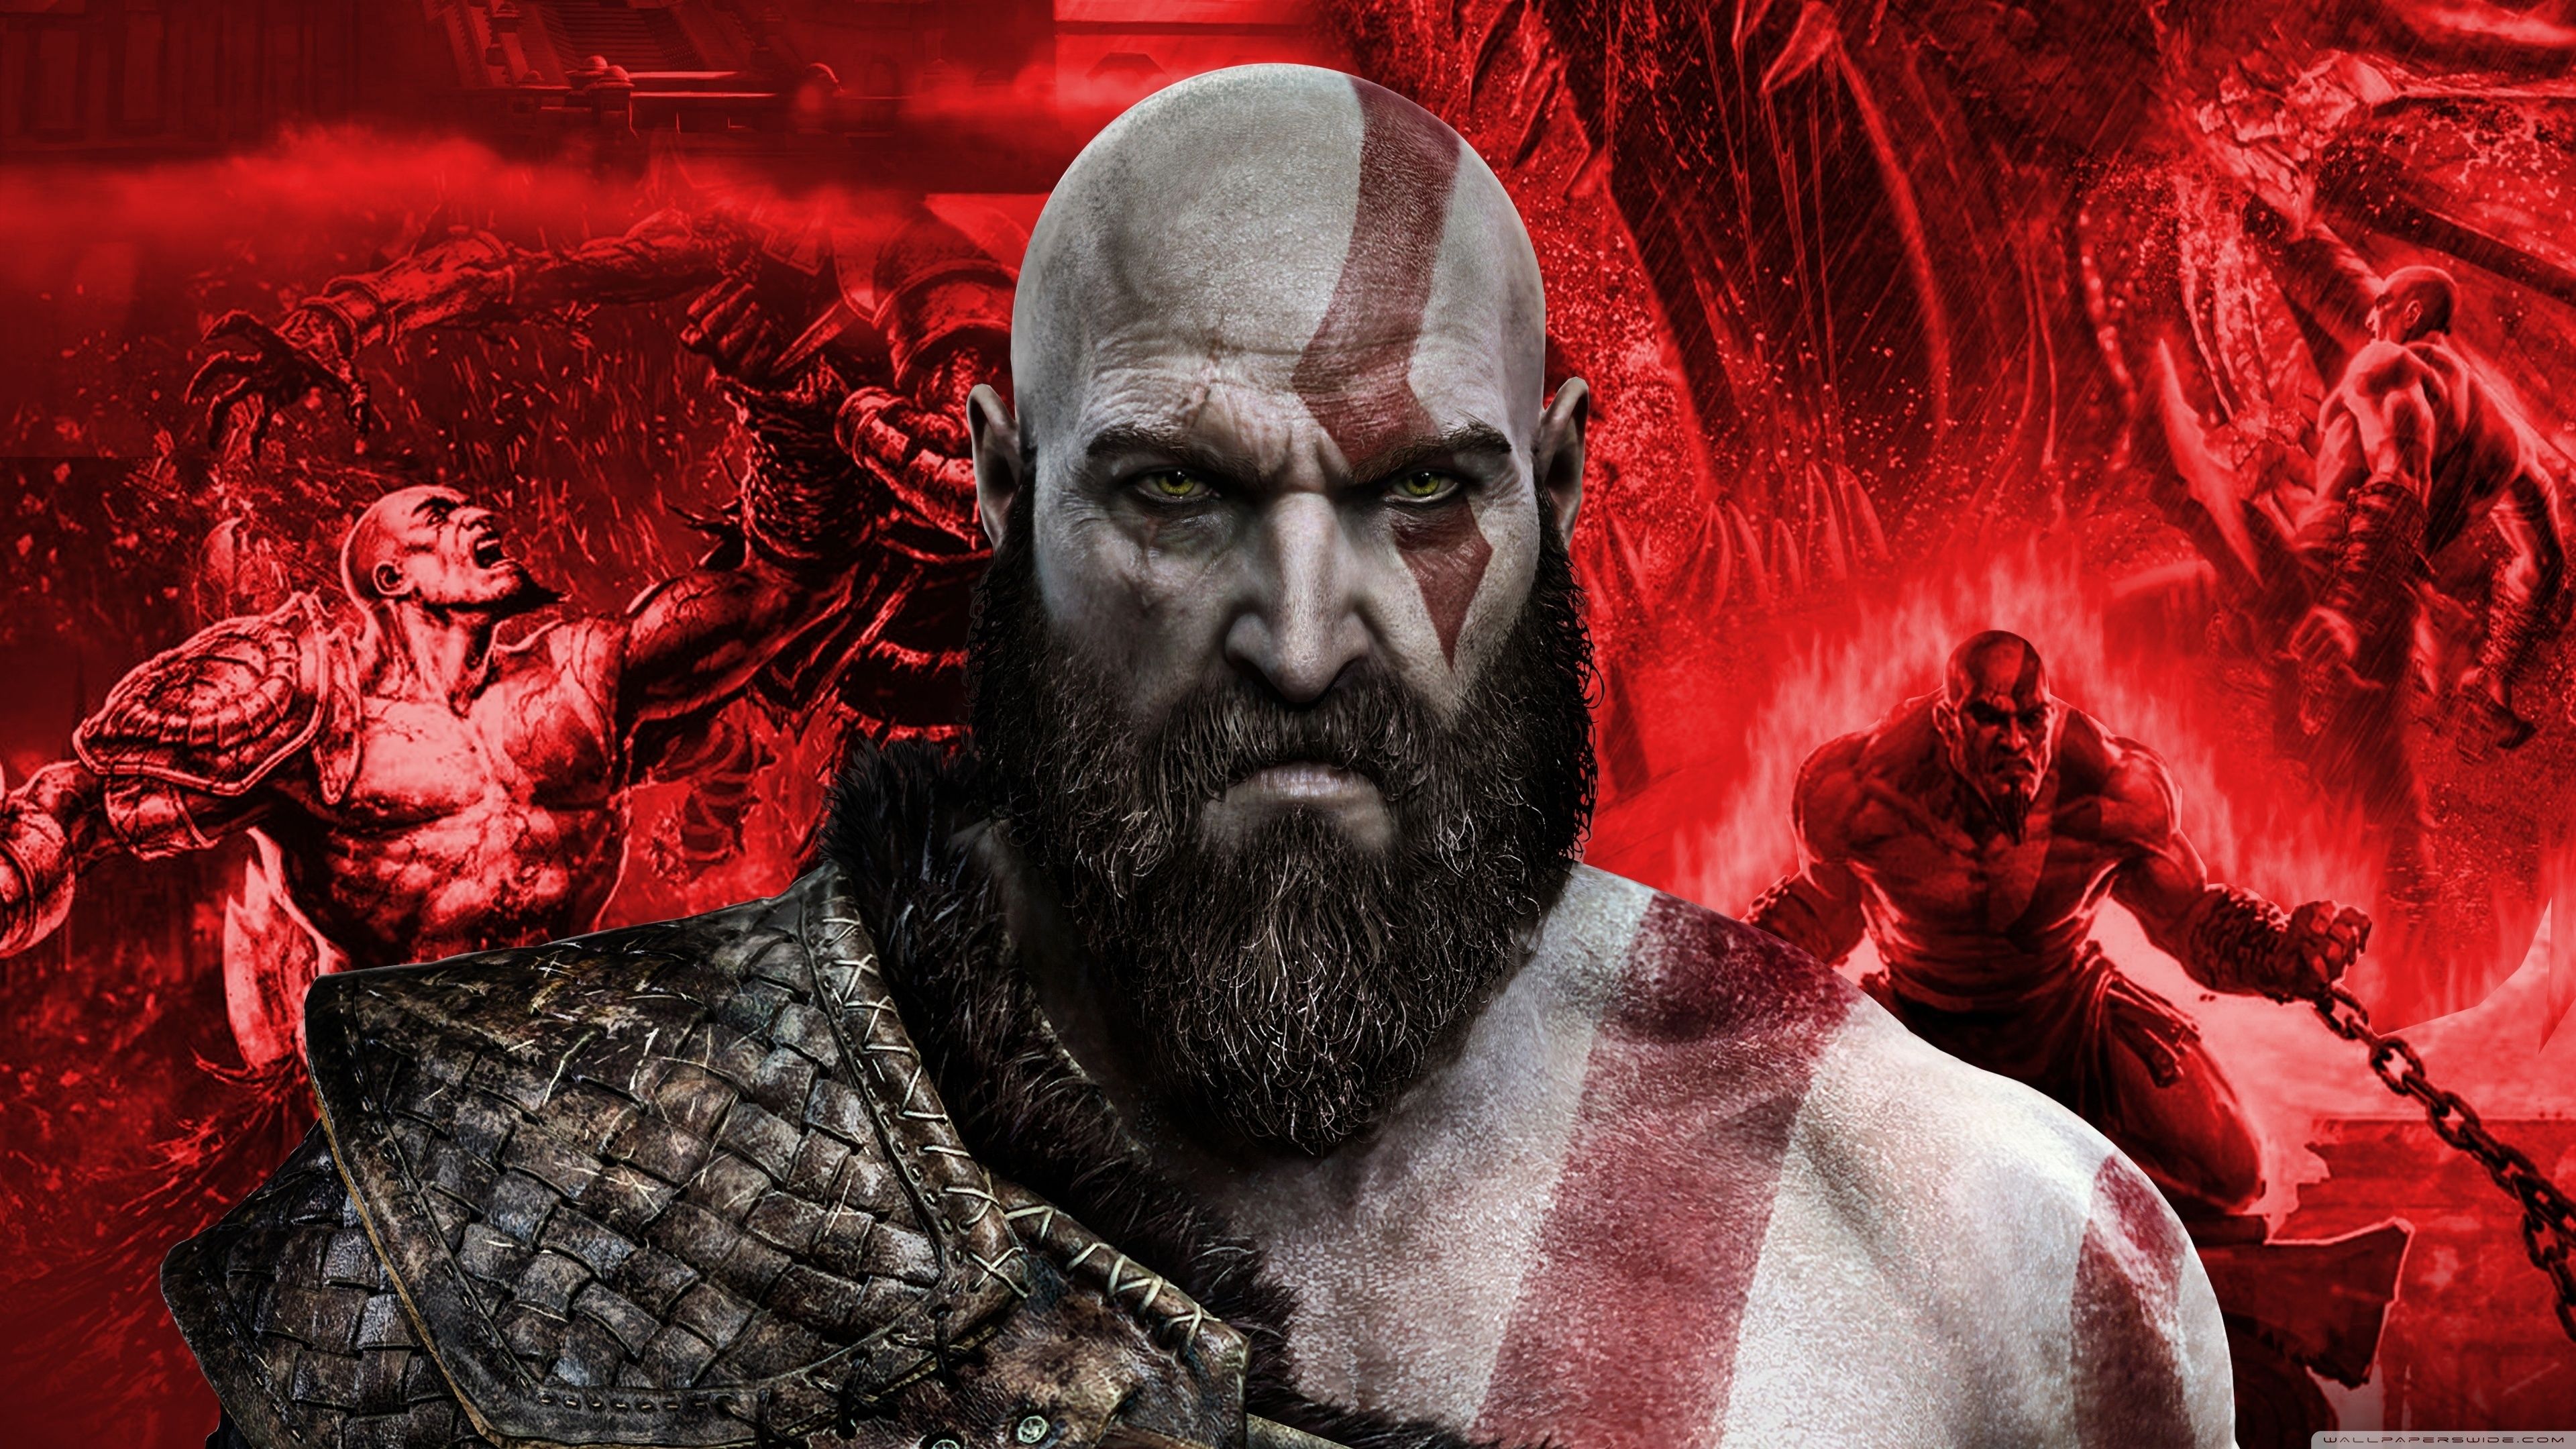 Download 3840x2400 wallpaper kratos, artwork, god of war, 4k, ultra HD 16: widescreen, 3840x2400 HD image, background, 7410